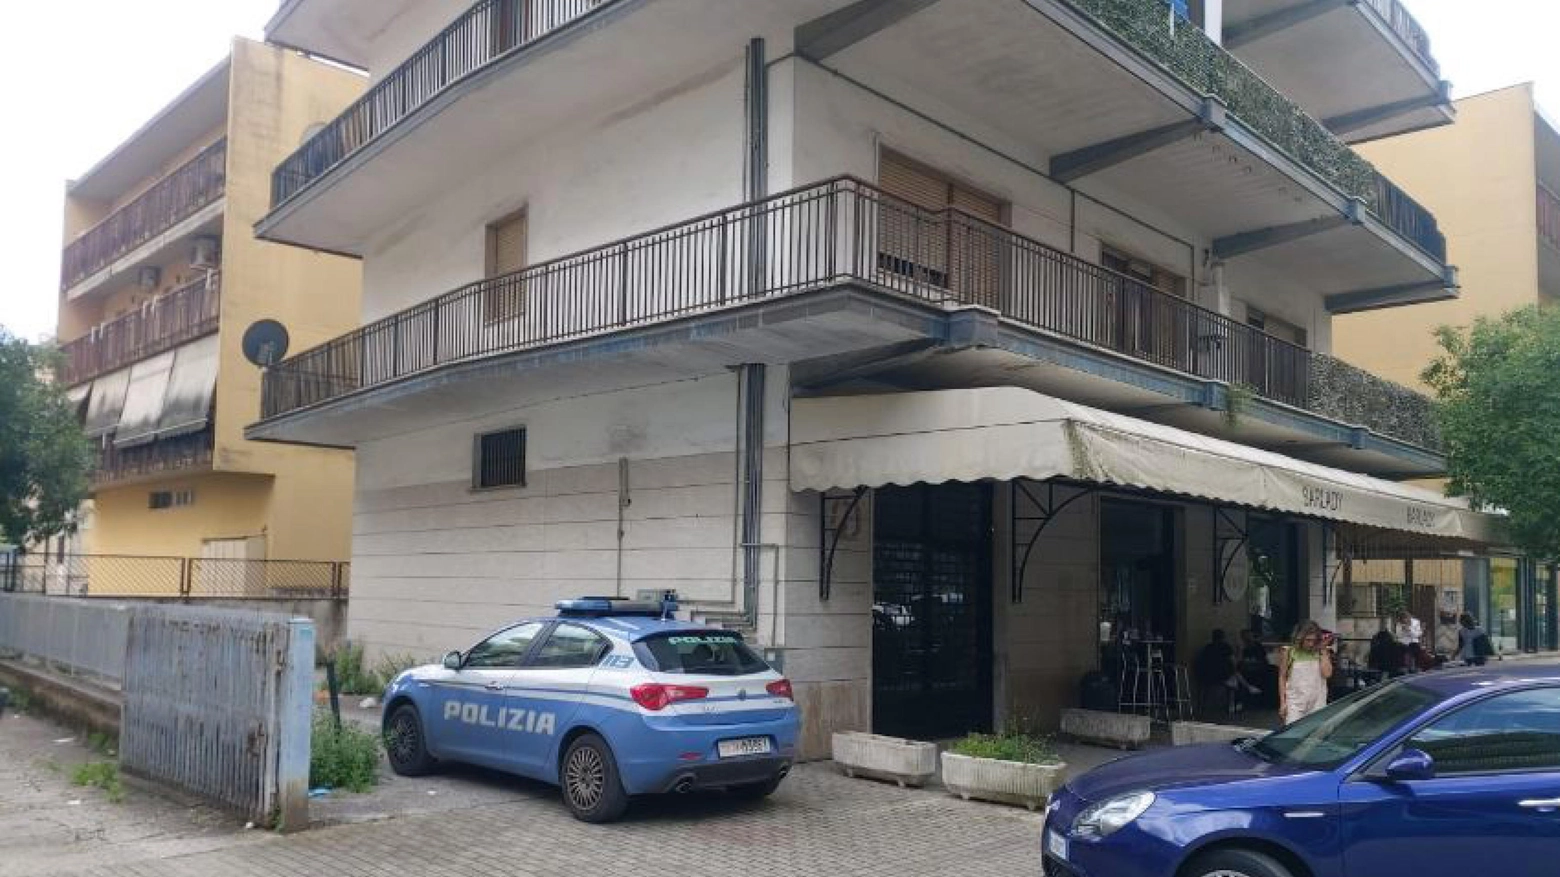 Omicidio a Cassino, trovato cadavere in appartamento